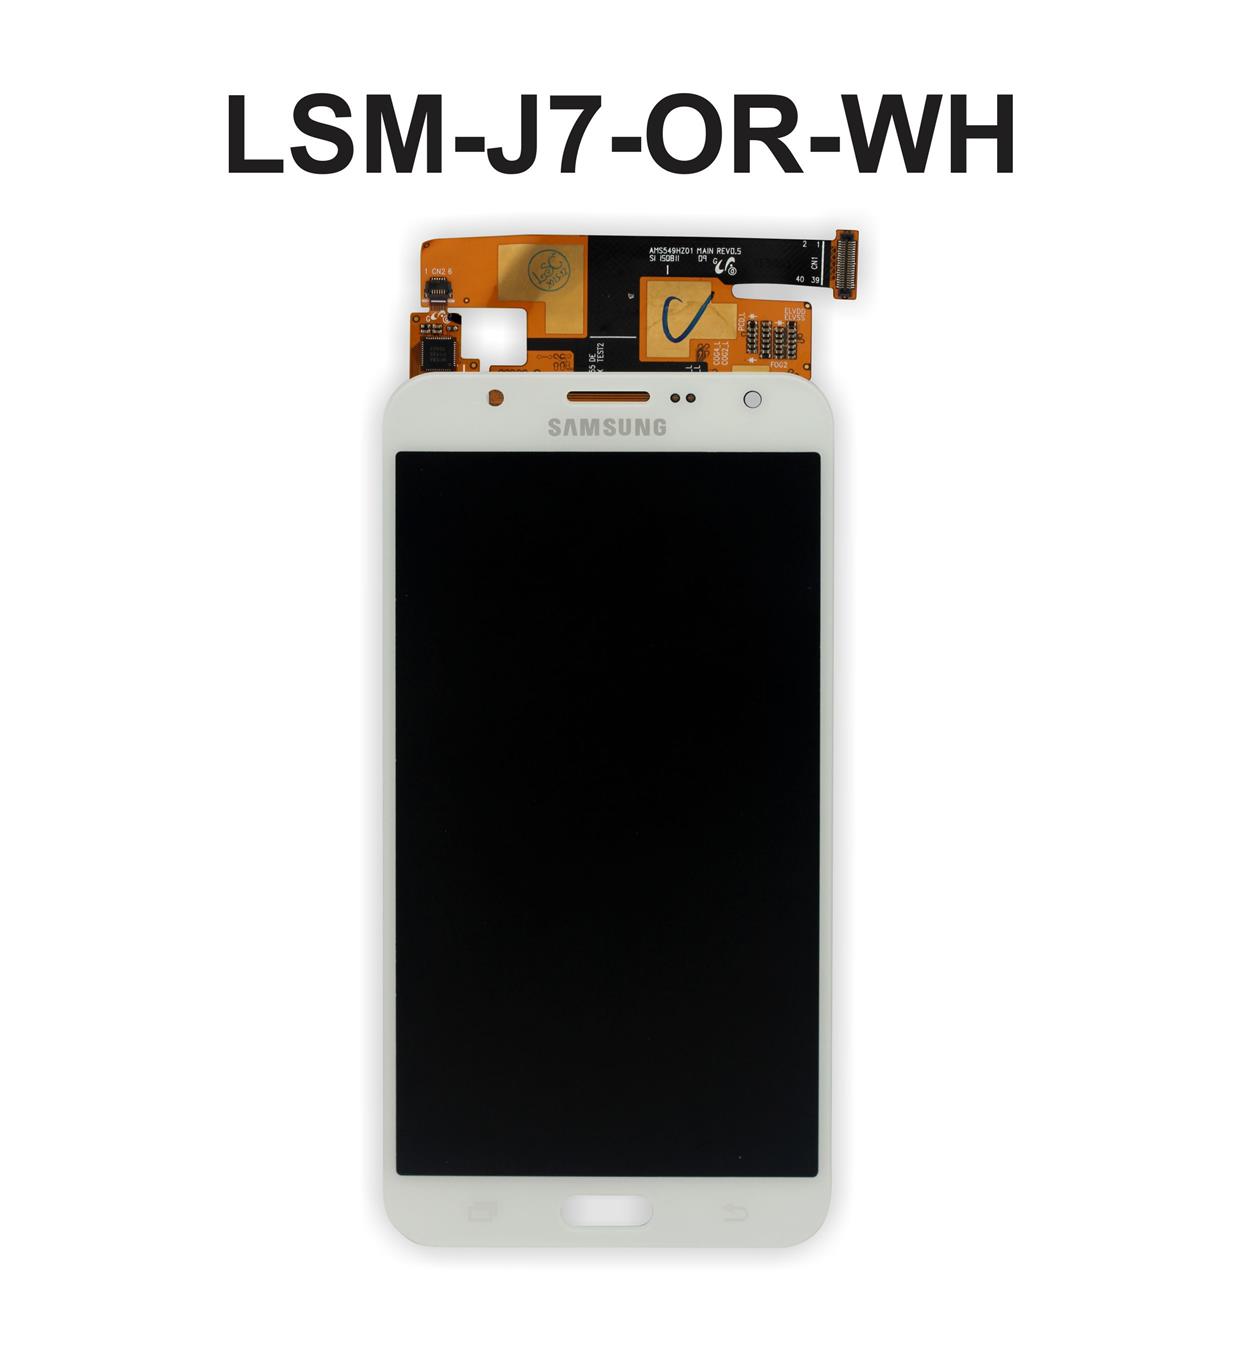 LCD Screen Digitizer Samsung Galaxy End 7 15 2019 1227 PM